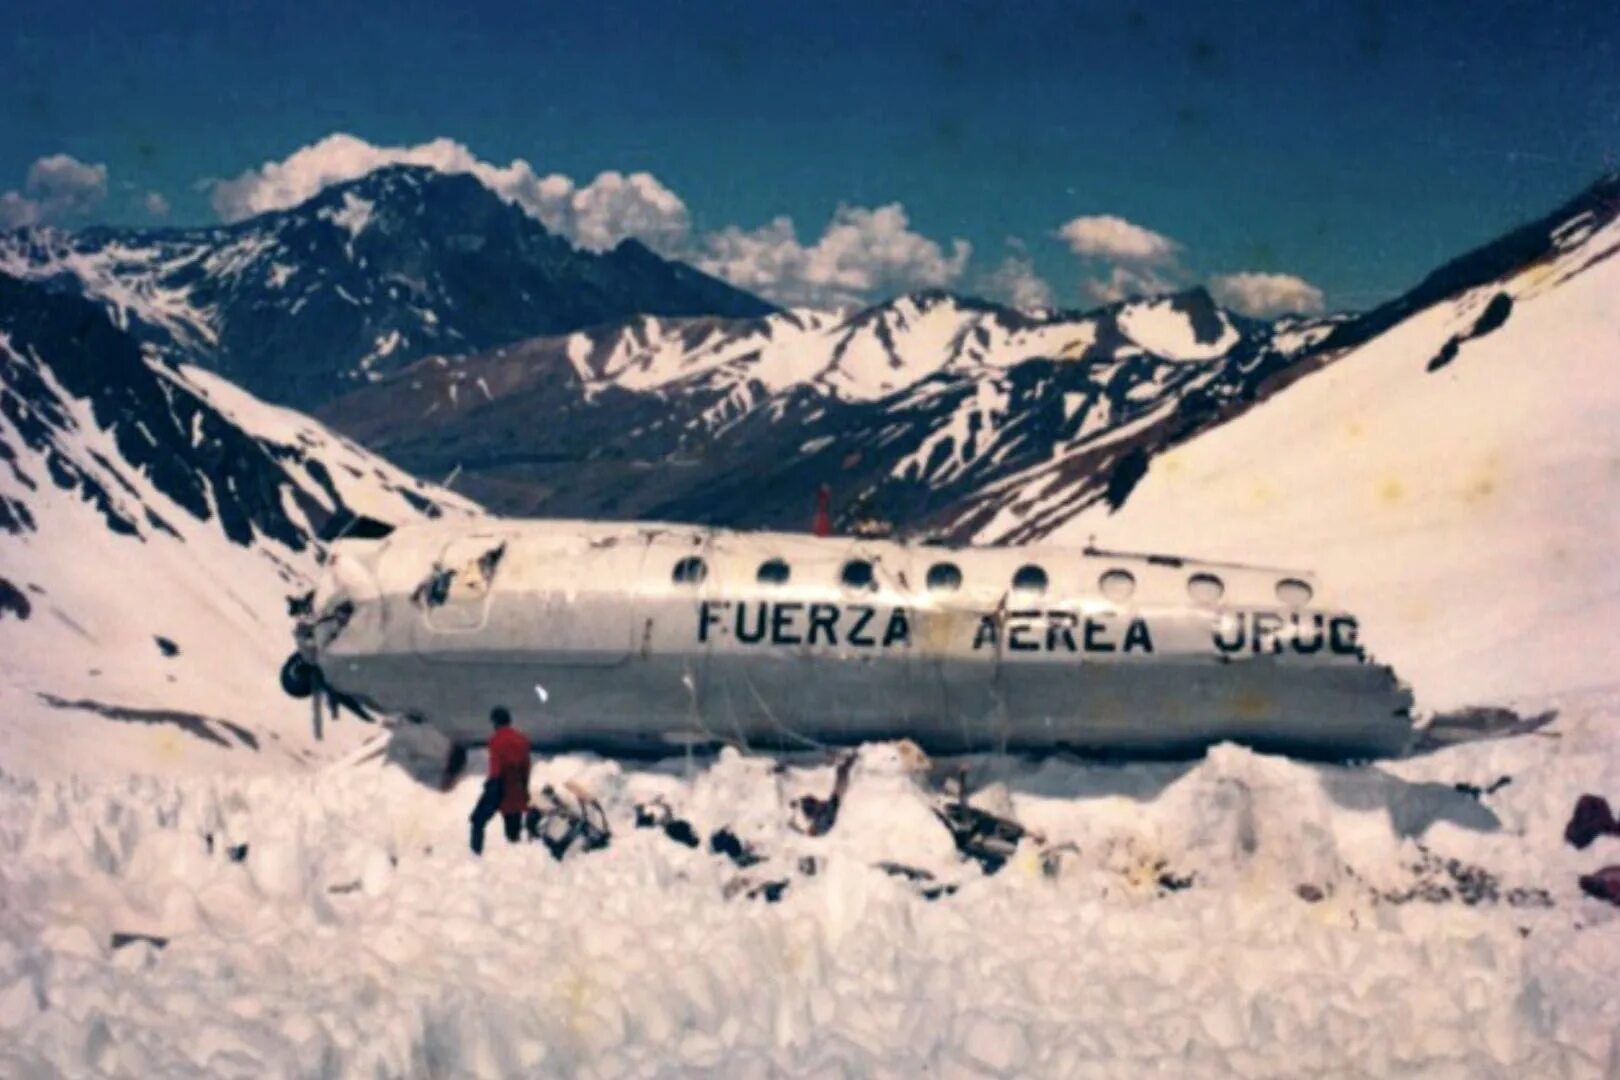 Про авиакатастрофу в андах. Самолет разбившийся в Андах в 1972. 571 Уругвайских ВВС В Андах.